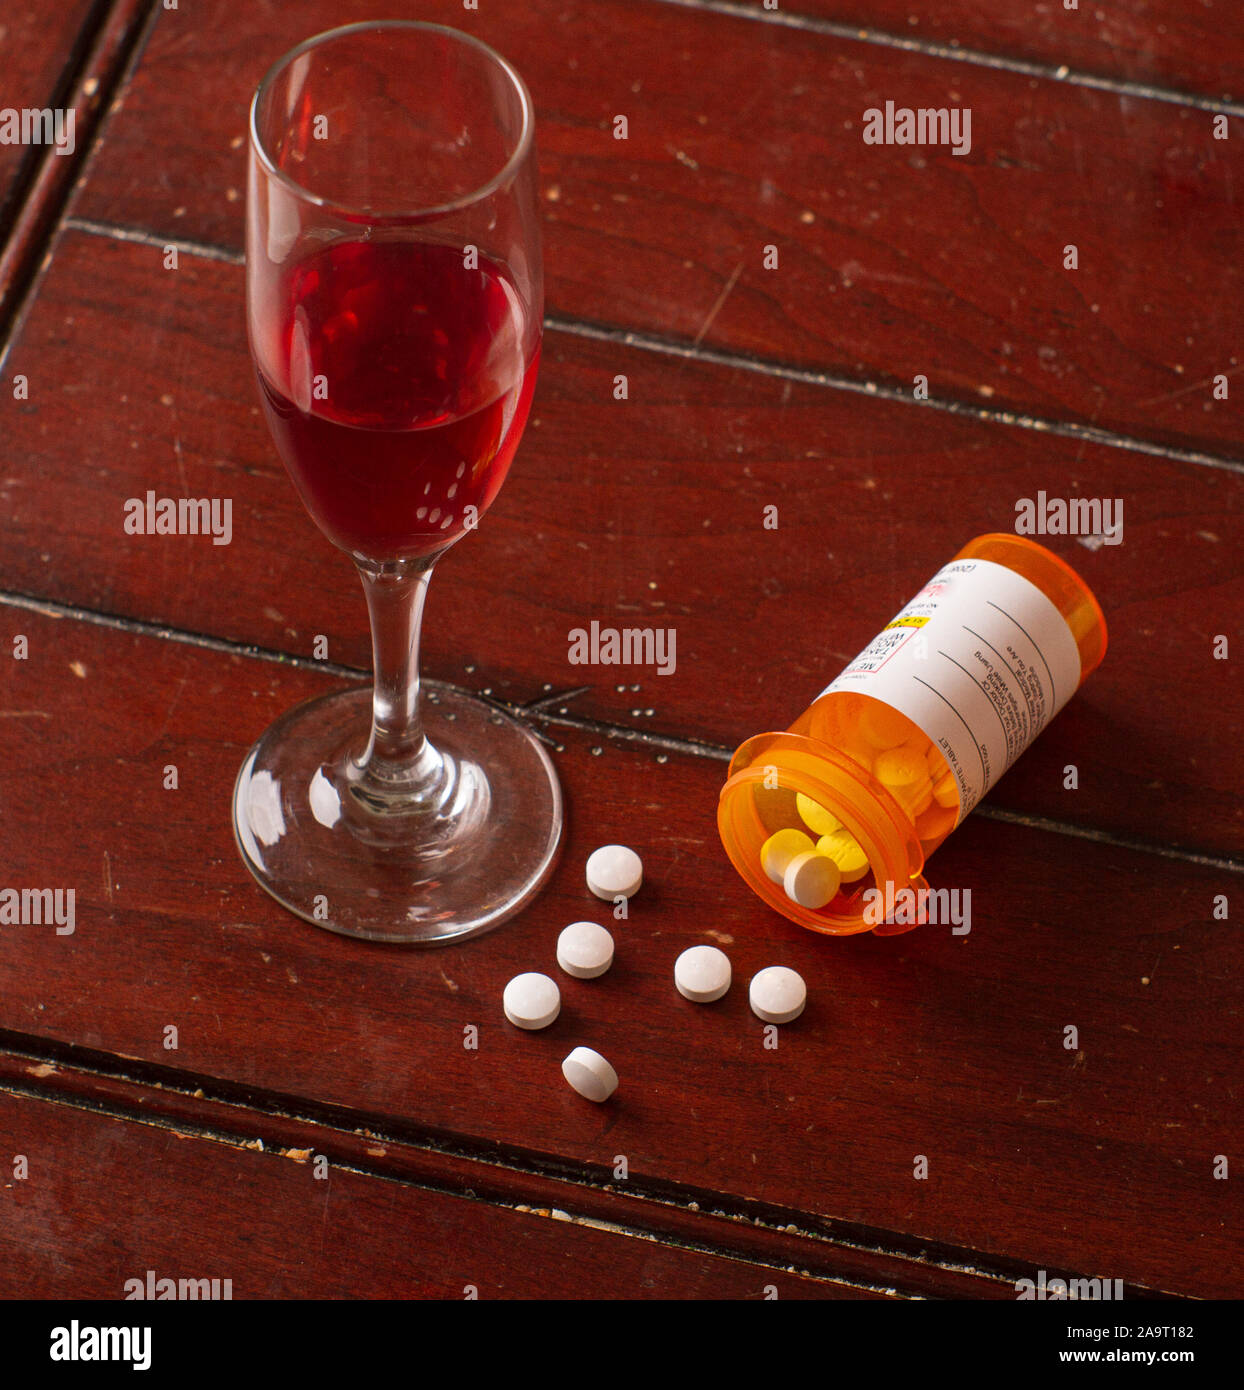 La miscelazione di pillole e il vino non è una buona idea Foto Stock